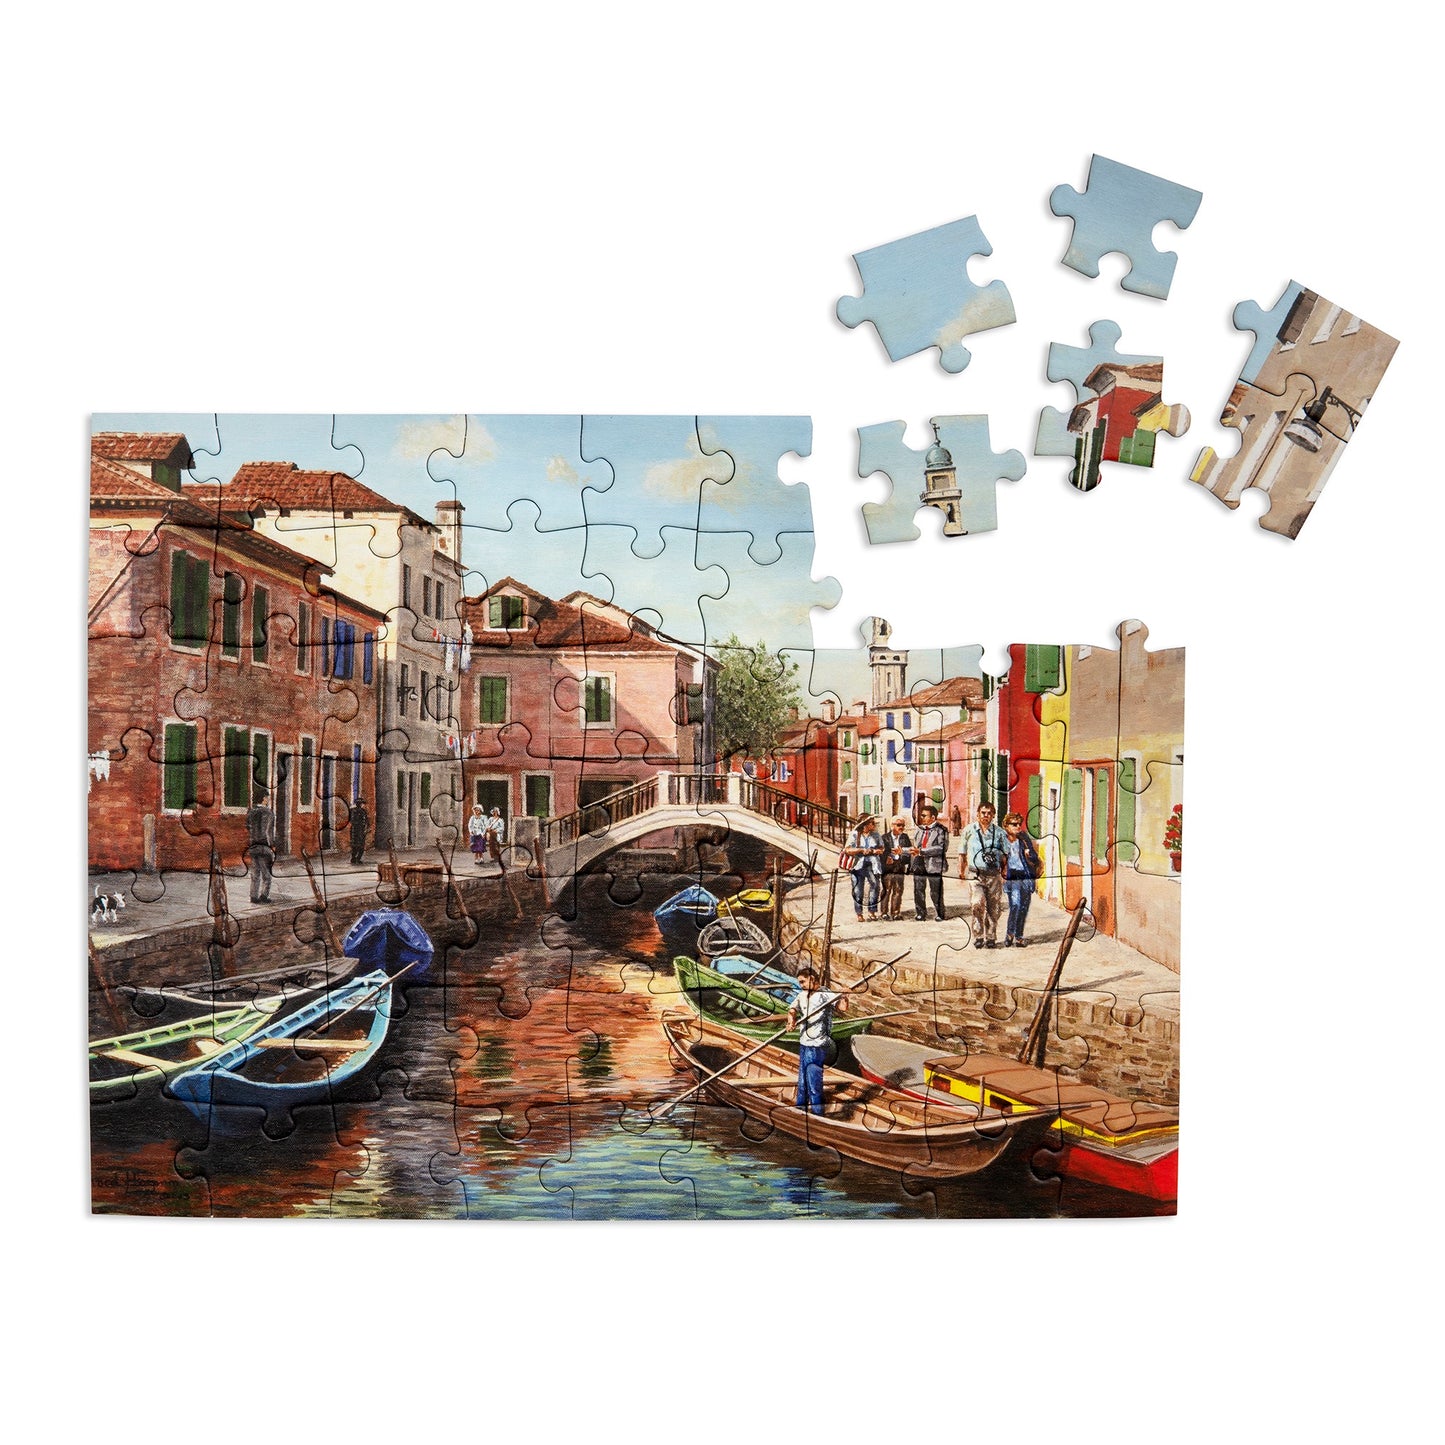 63-piece jigsaw puzzle "Burano Island"